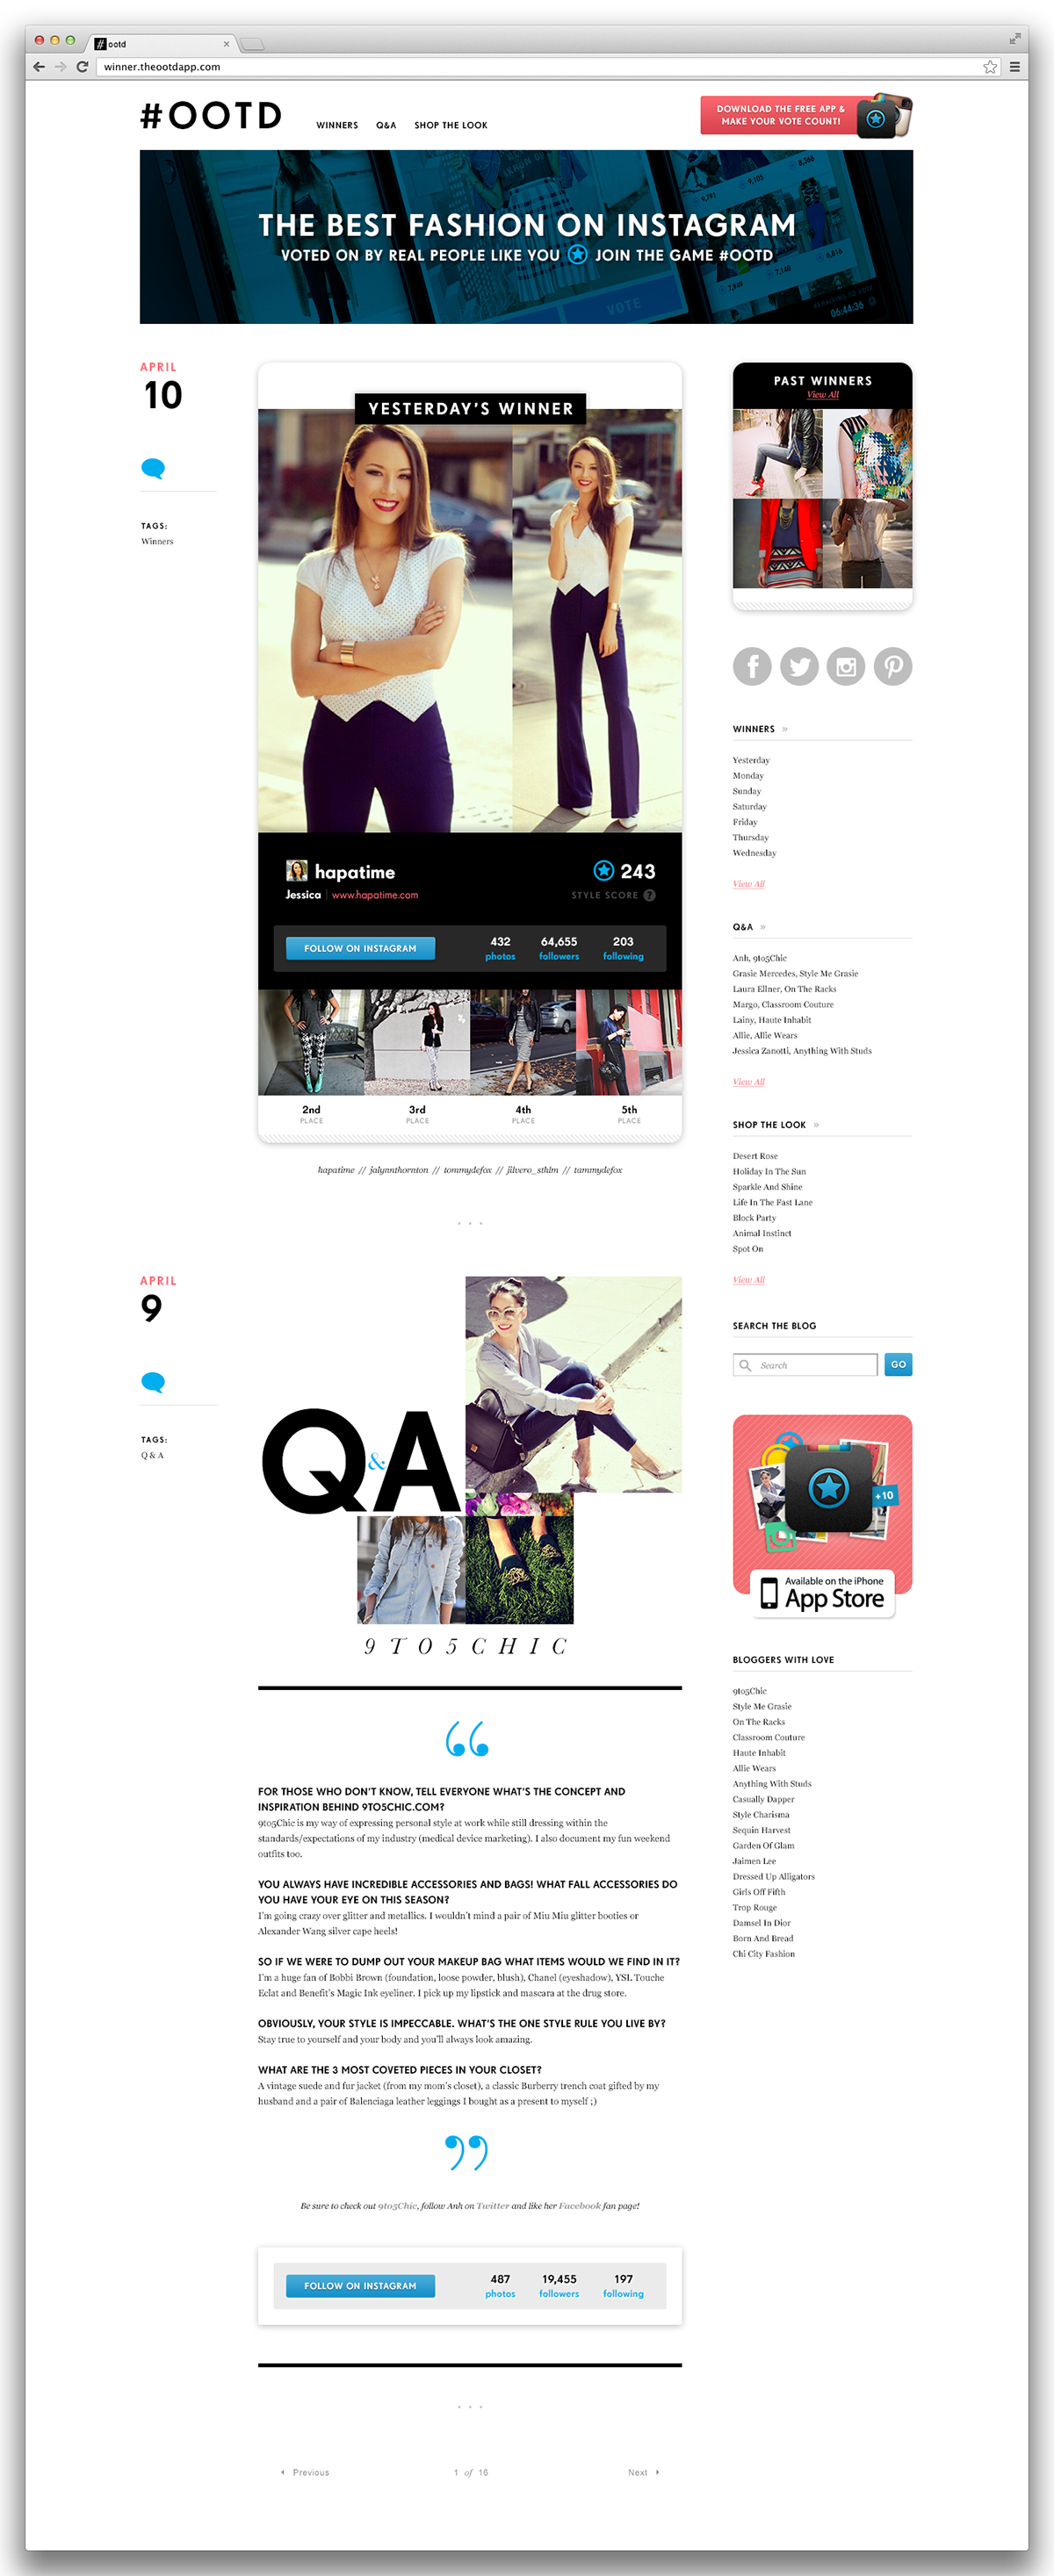 #ootd GTIO Website app desktop mobile Blog smartphone iphone Responsive